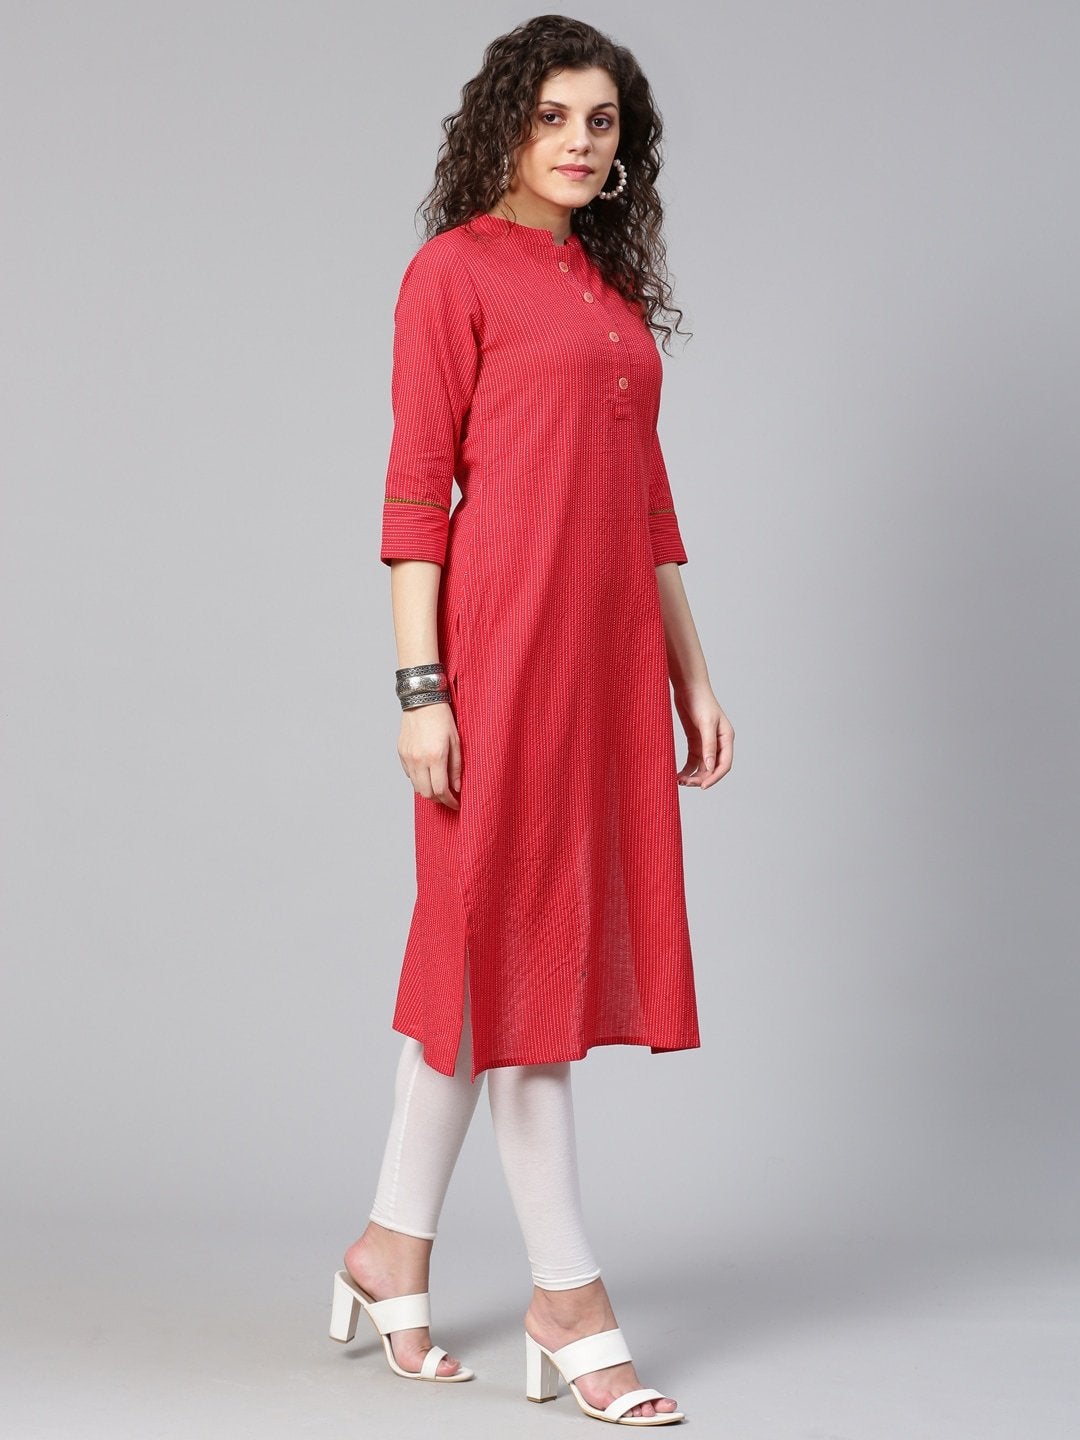 Women's Red & White Self-Striped Straight Kurta - Meeranshi